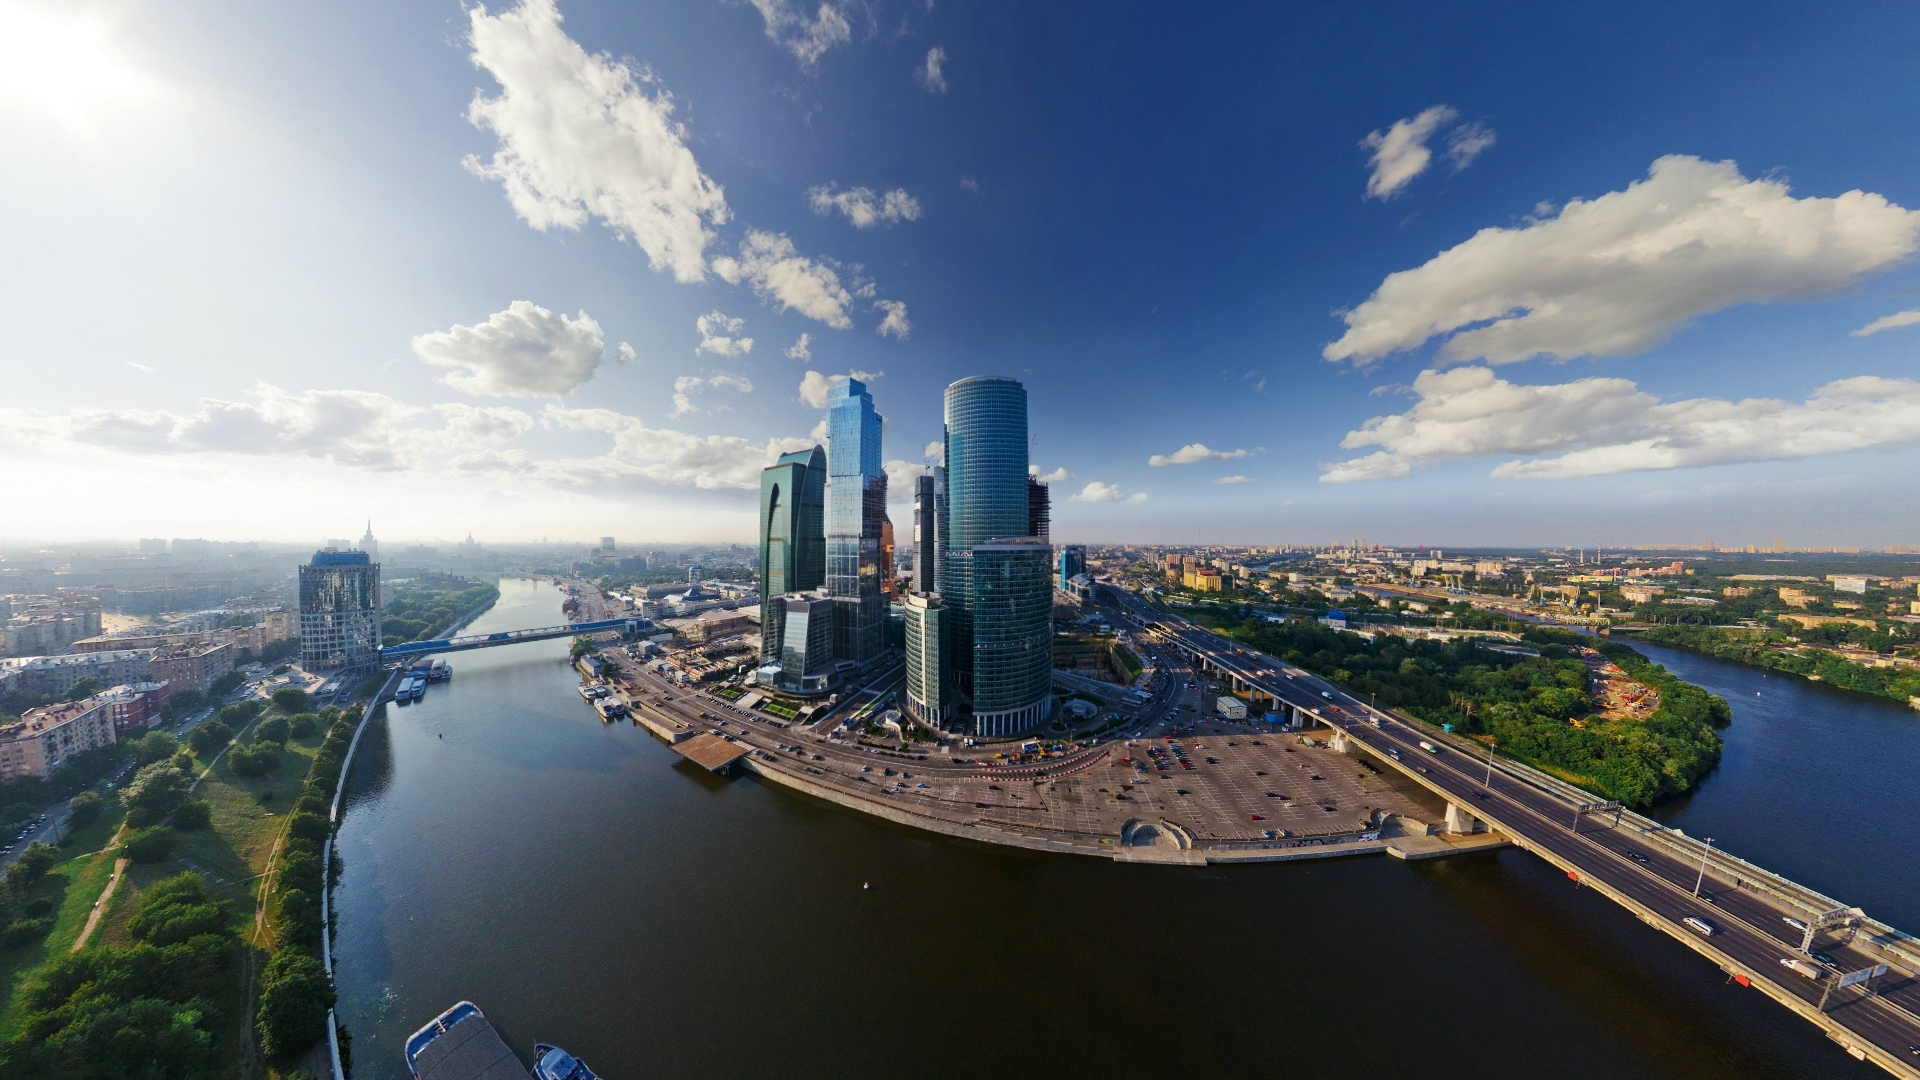 Moscow International Business Center wallpaper   1286975